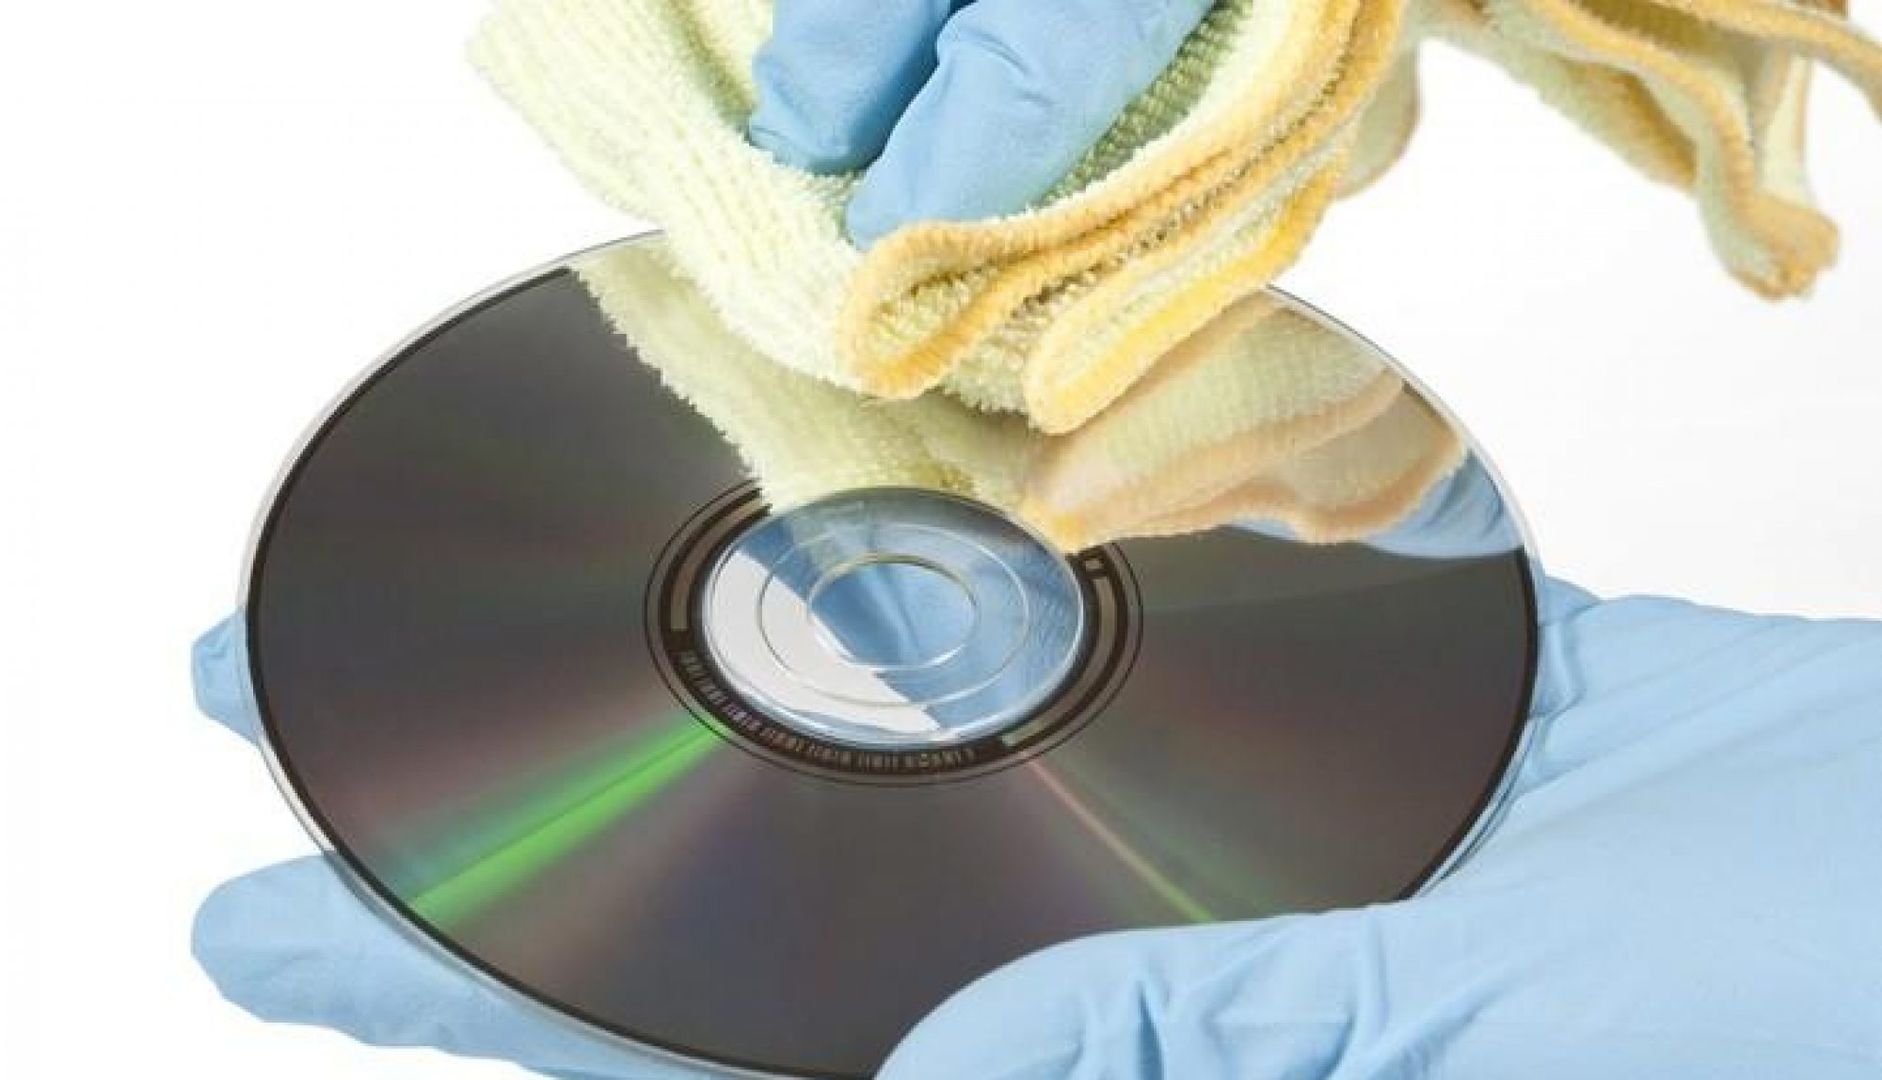 Разбитый диск. Поцарапанный диск. Крутящиеся компакт диски. Прибор для восстановления компакт дисков.  Полироль для компакт-дисков "Disc Repair".